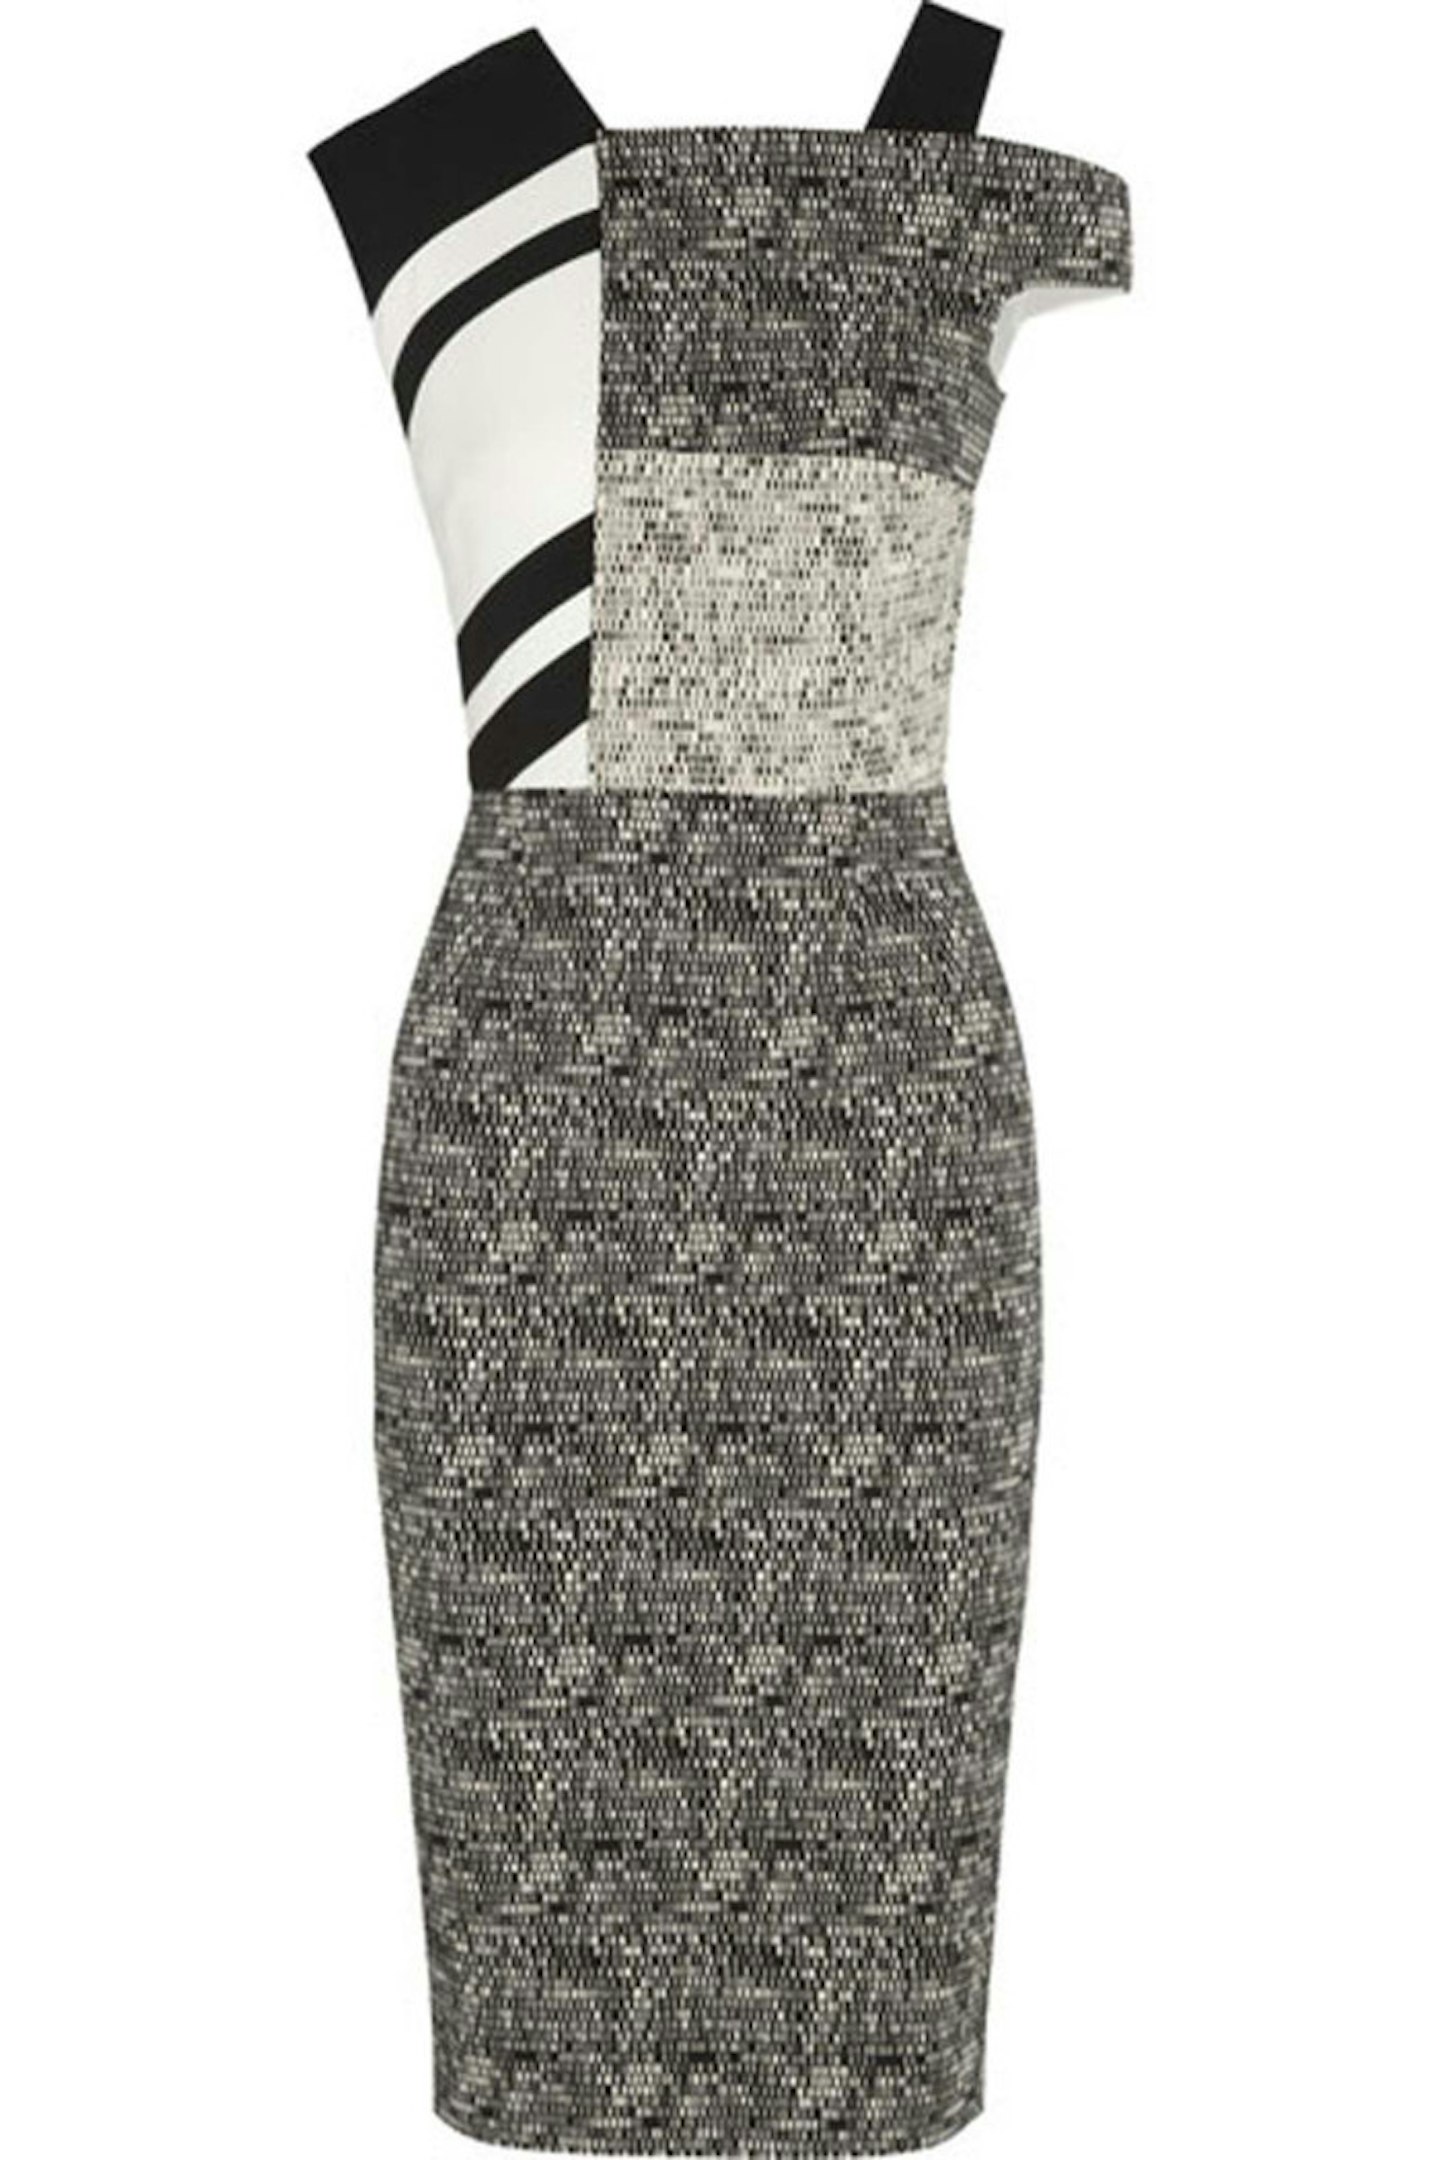 Jacquard and Striped Crepe Dress, £1,450, Roland Mouret at Net-a-porter.com